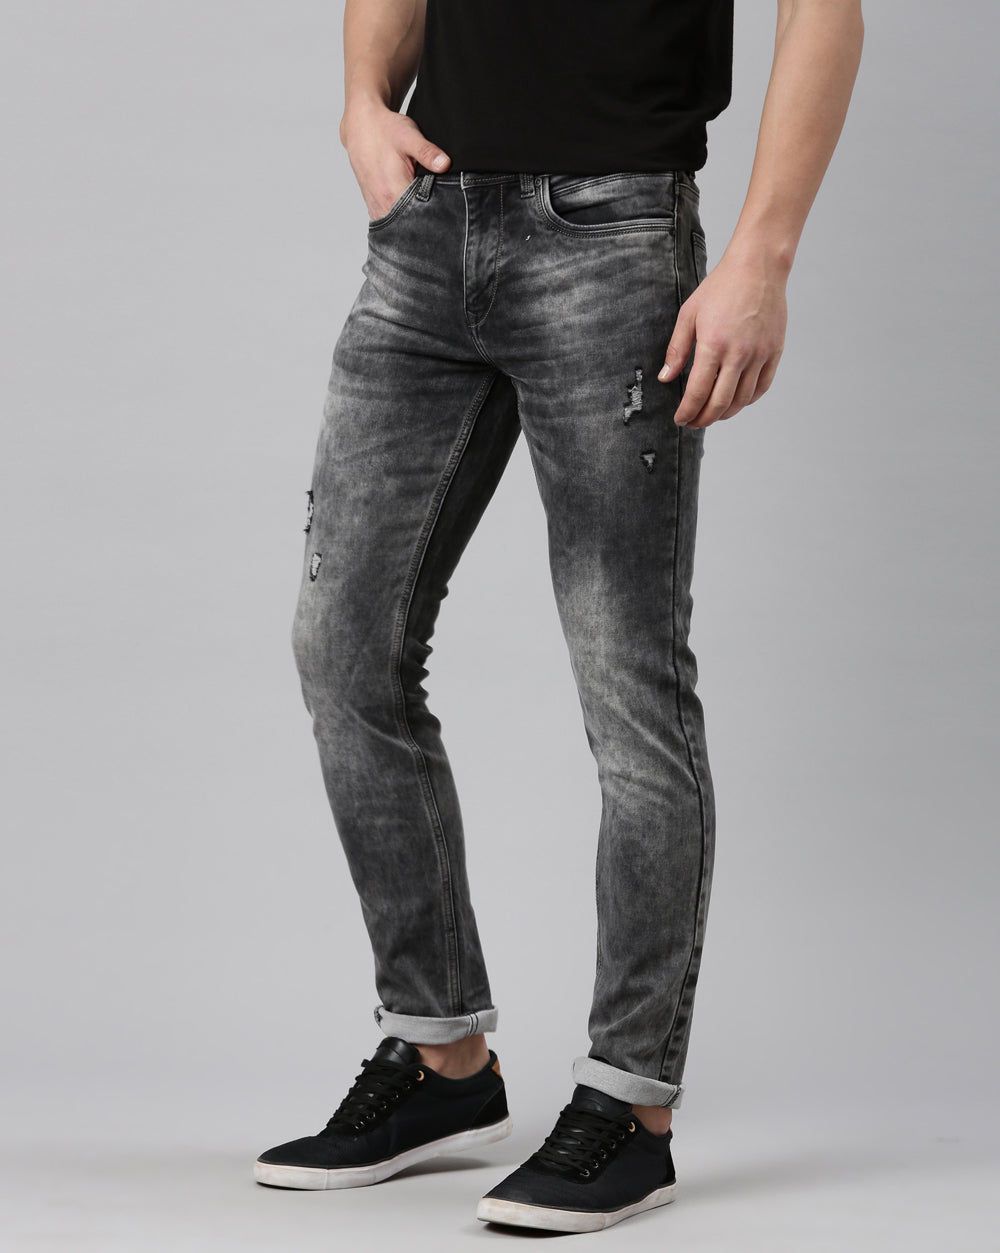 GREY WASHED DENIM Jeans For Men 